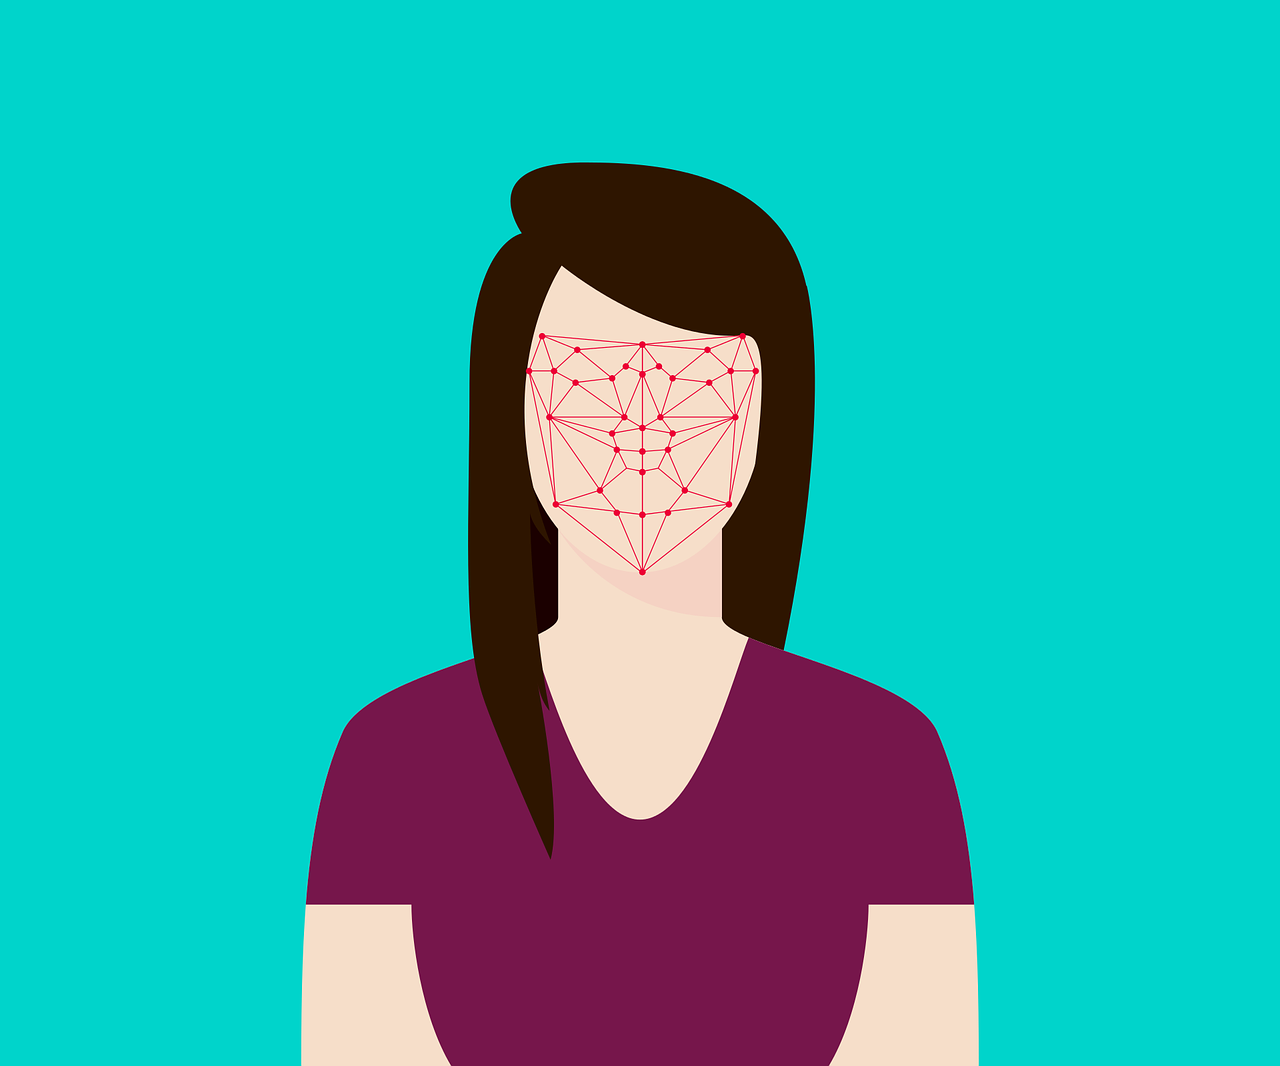 Reconocimiento facial y protección de datos personales